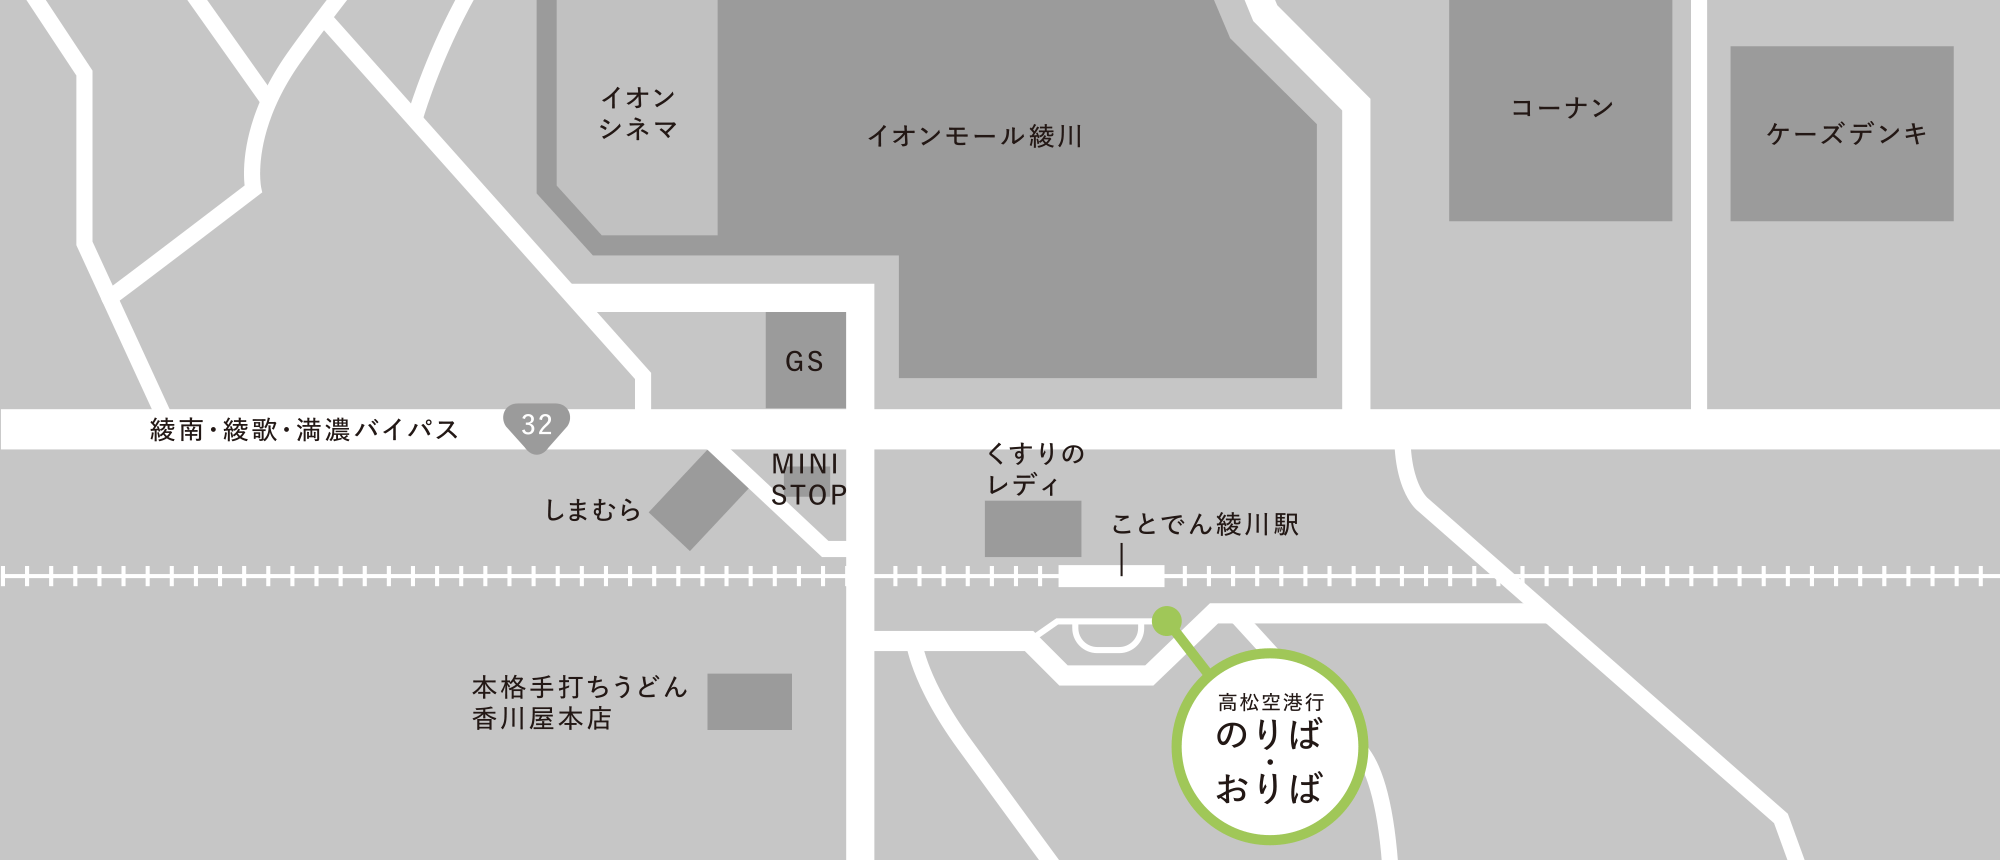 綾川駅バス停